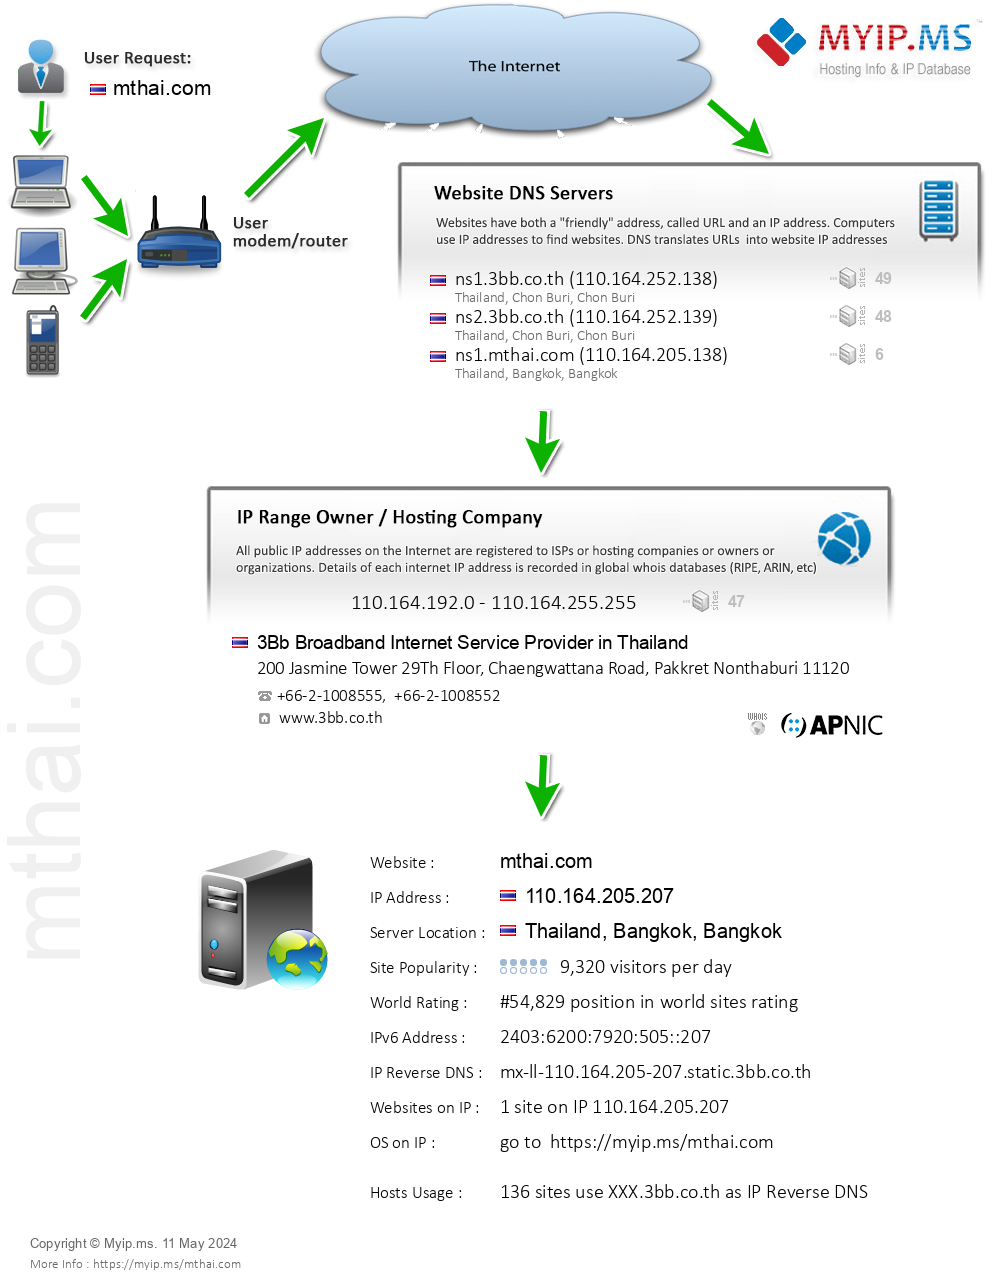 Mthai.com - Website Hosting Visual IP Diagram